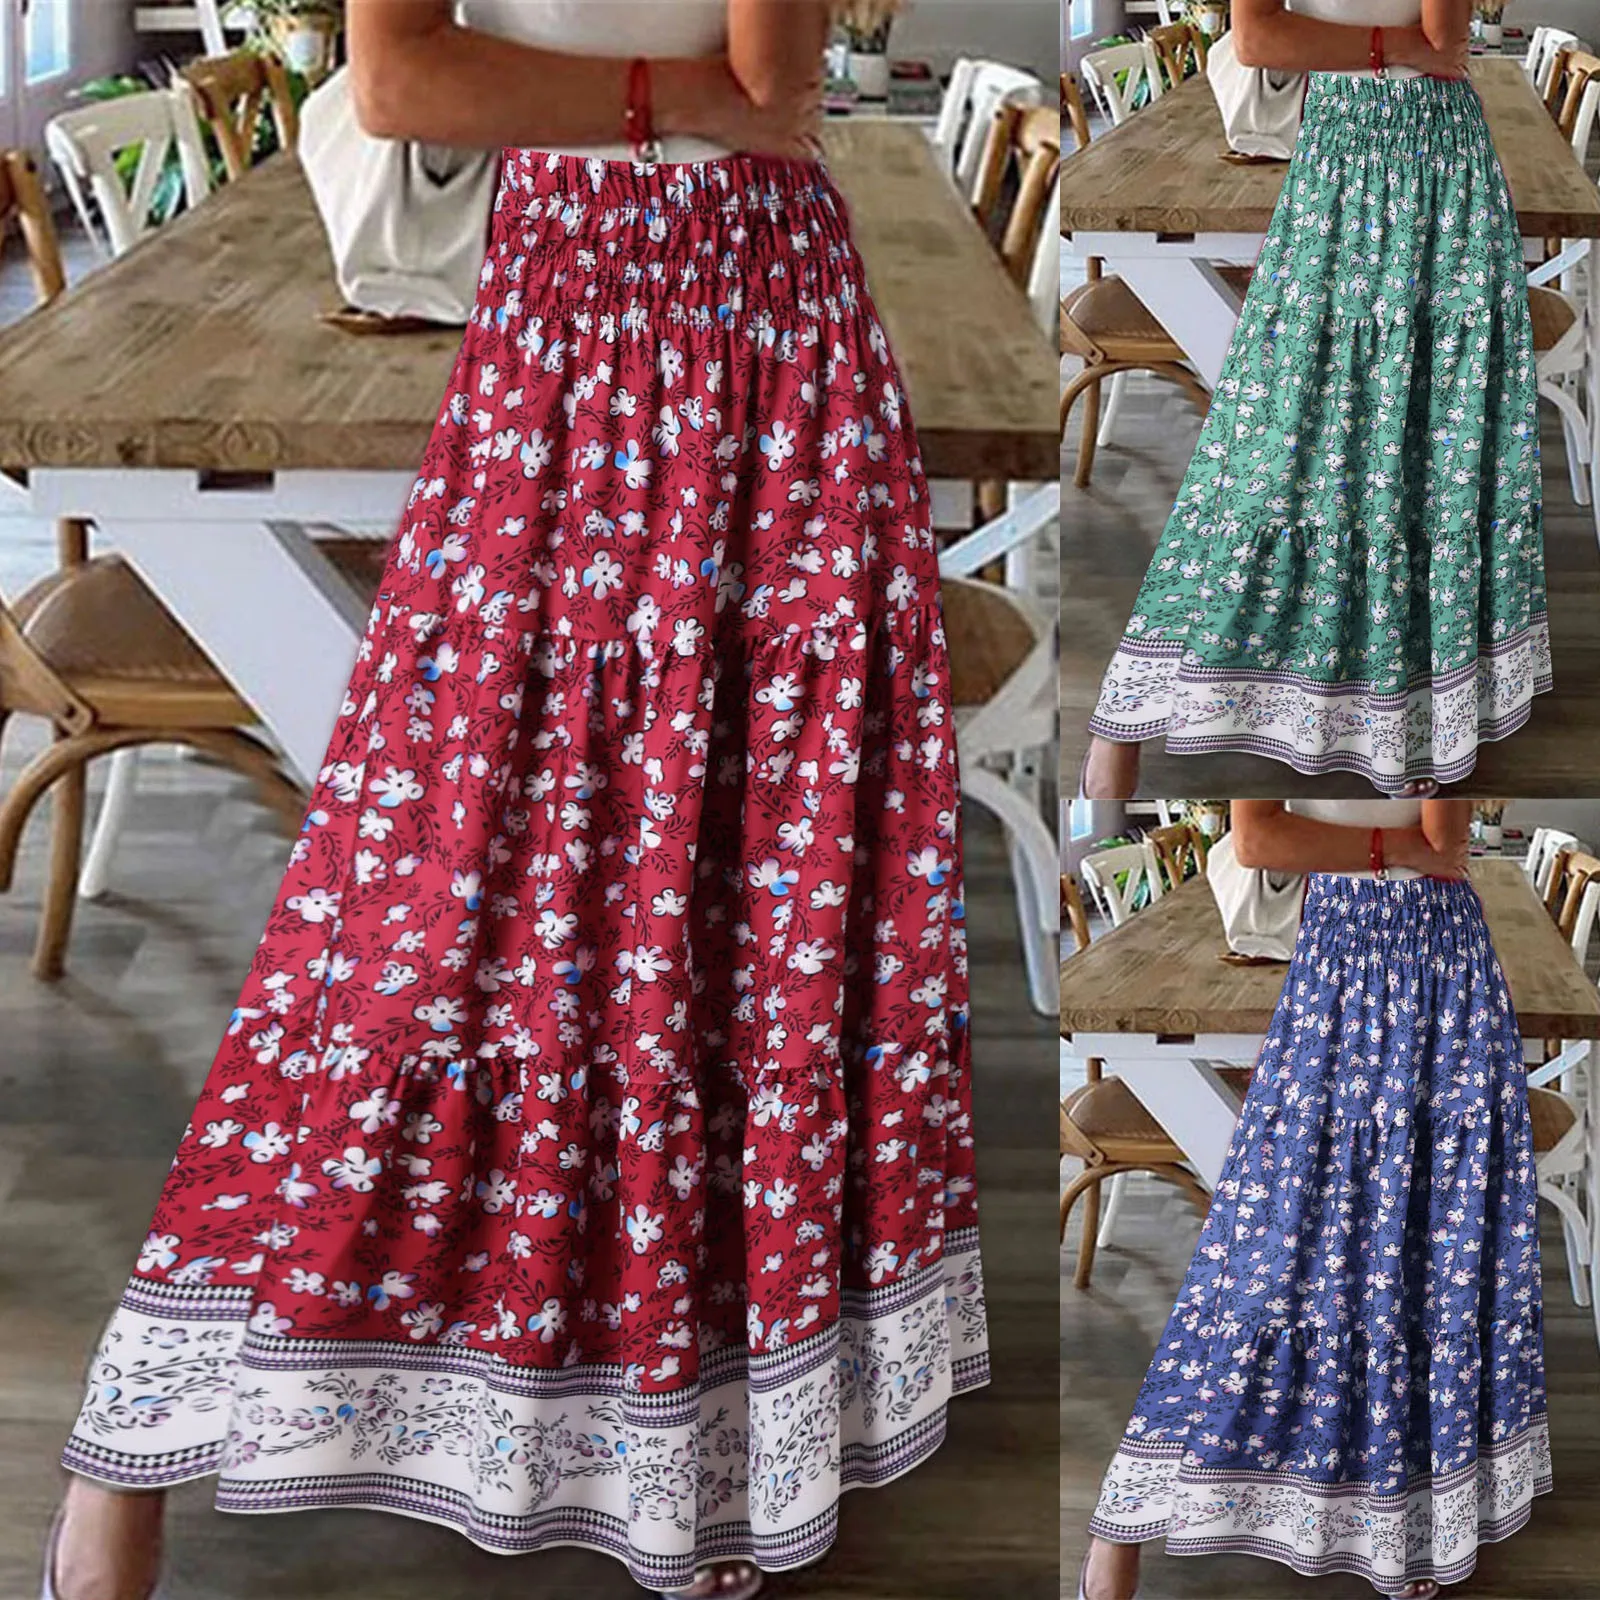 New Floral Skirt 2022 Summer Women Boho Long Female Fashion Plus Size Wrinkle Dresses Casual Beach Skirt for Women Robes Jurk